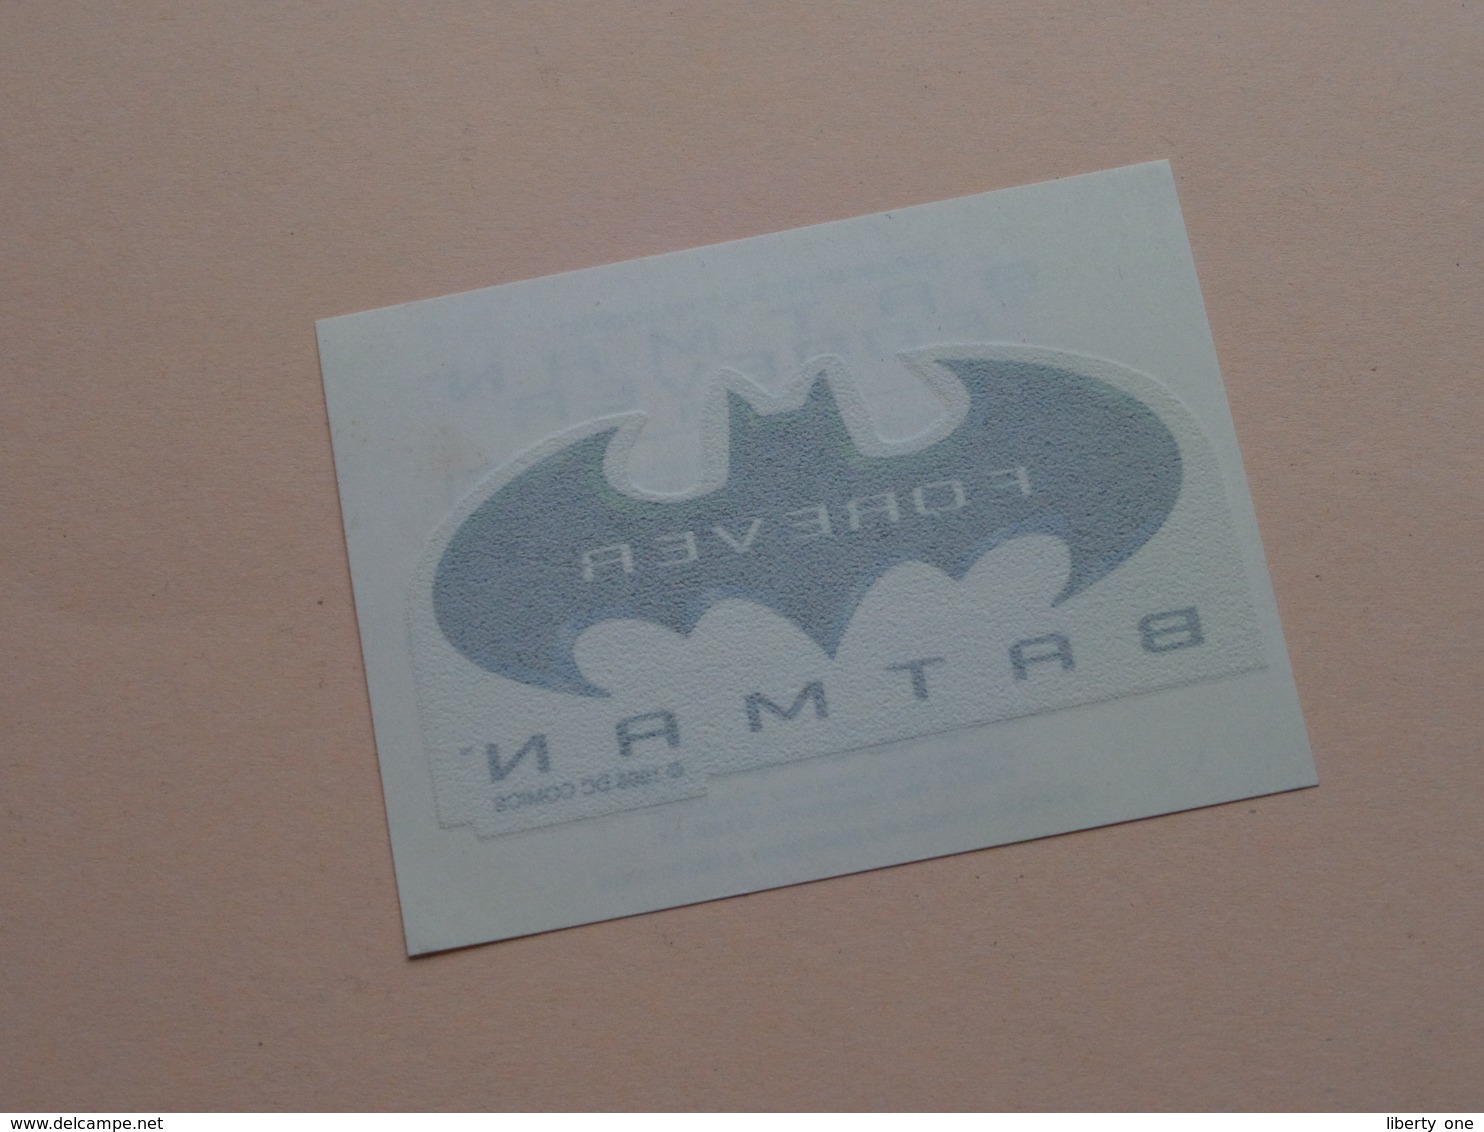 BATMAN FOREVER ( Sticker 9 X 6,5 Cm. ) Smacks De KELLOGG'S ( Details - Zie Foto ) 1995 DC COMICS ! - Publicité Cinématographique